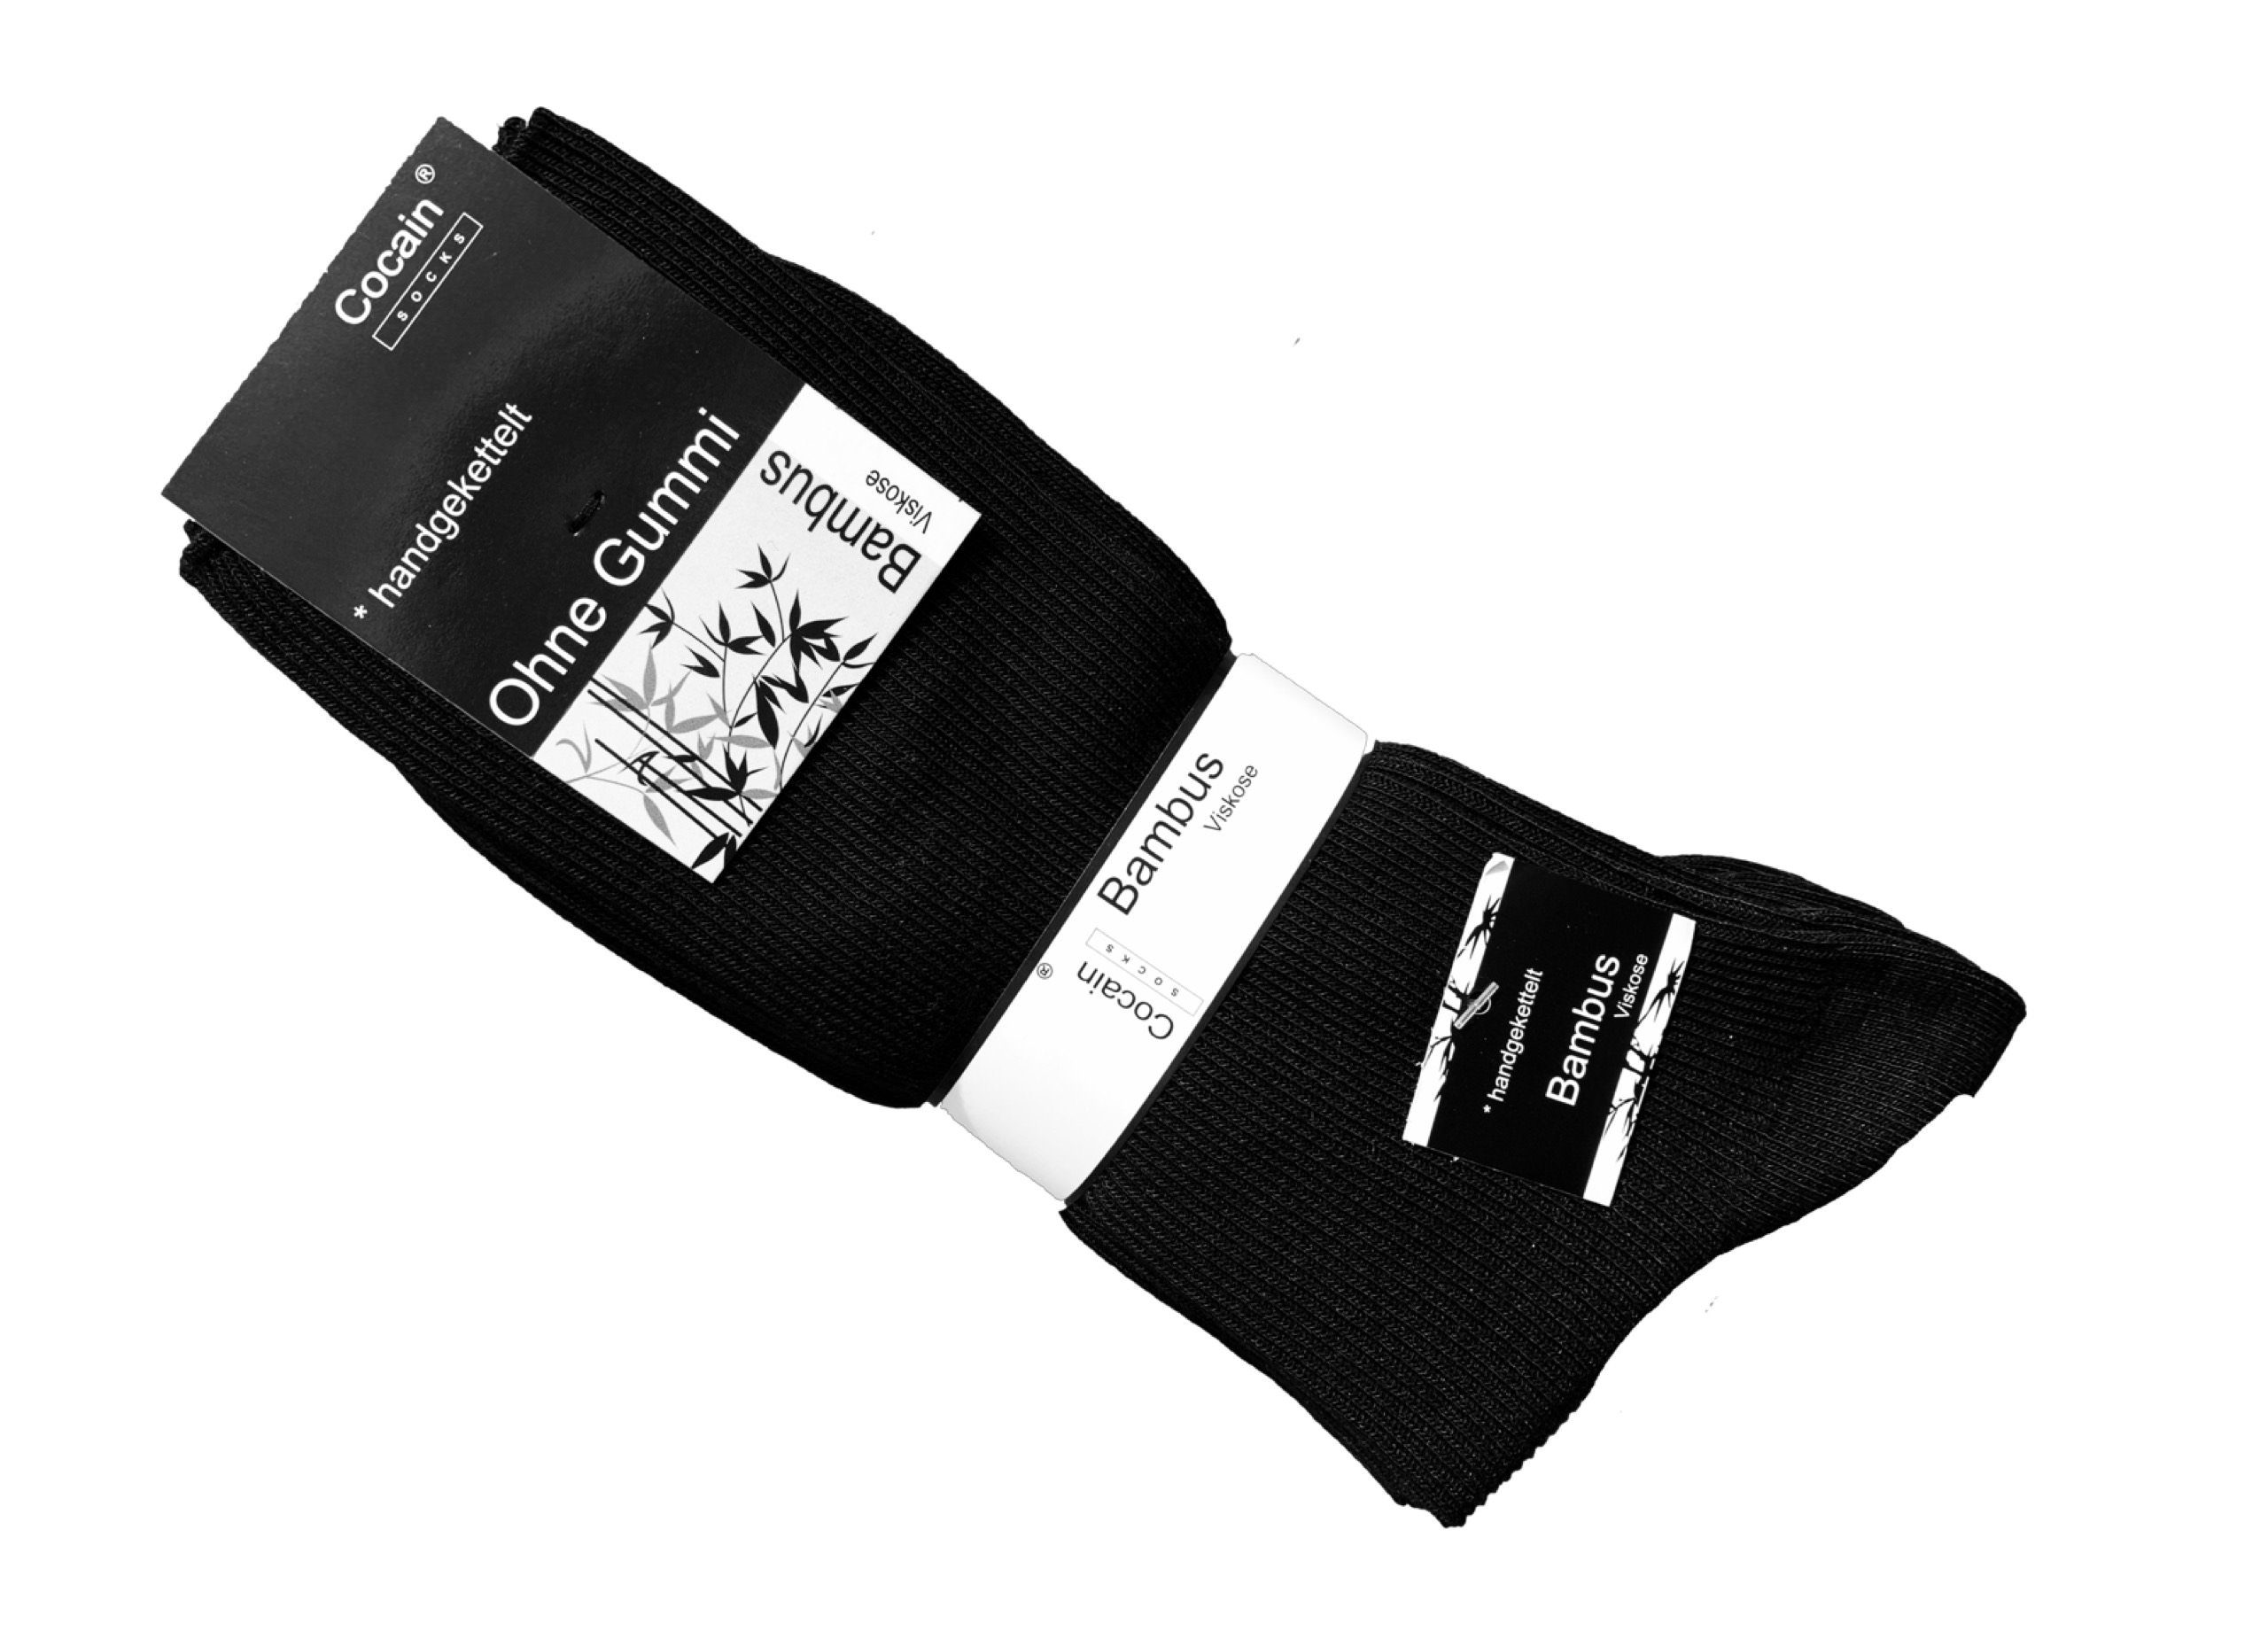 schweissmindernd atmungsaktive Funktionssocken Bambus Socken underwear (24-Paar) schwarz Cocain ohne Naturfaser Gummi